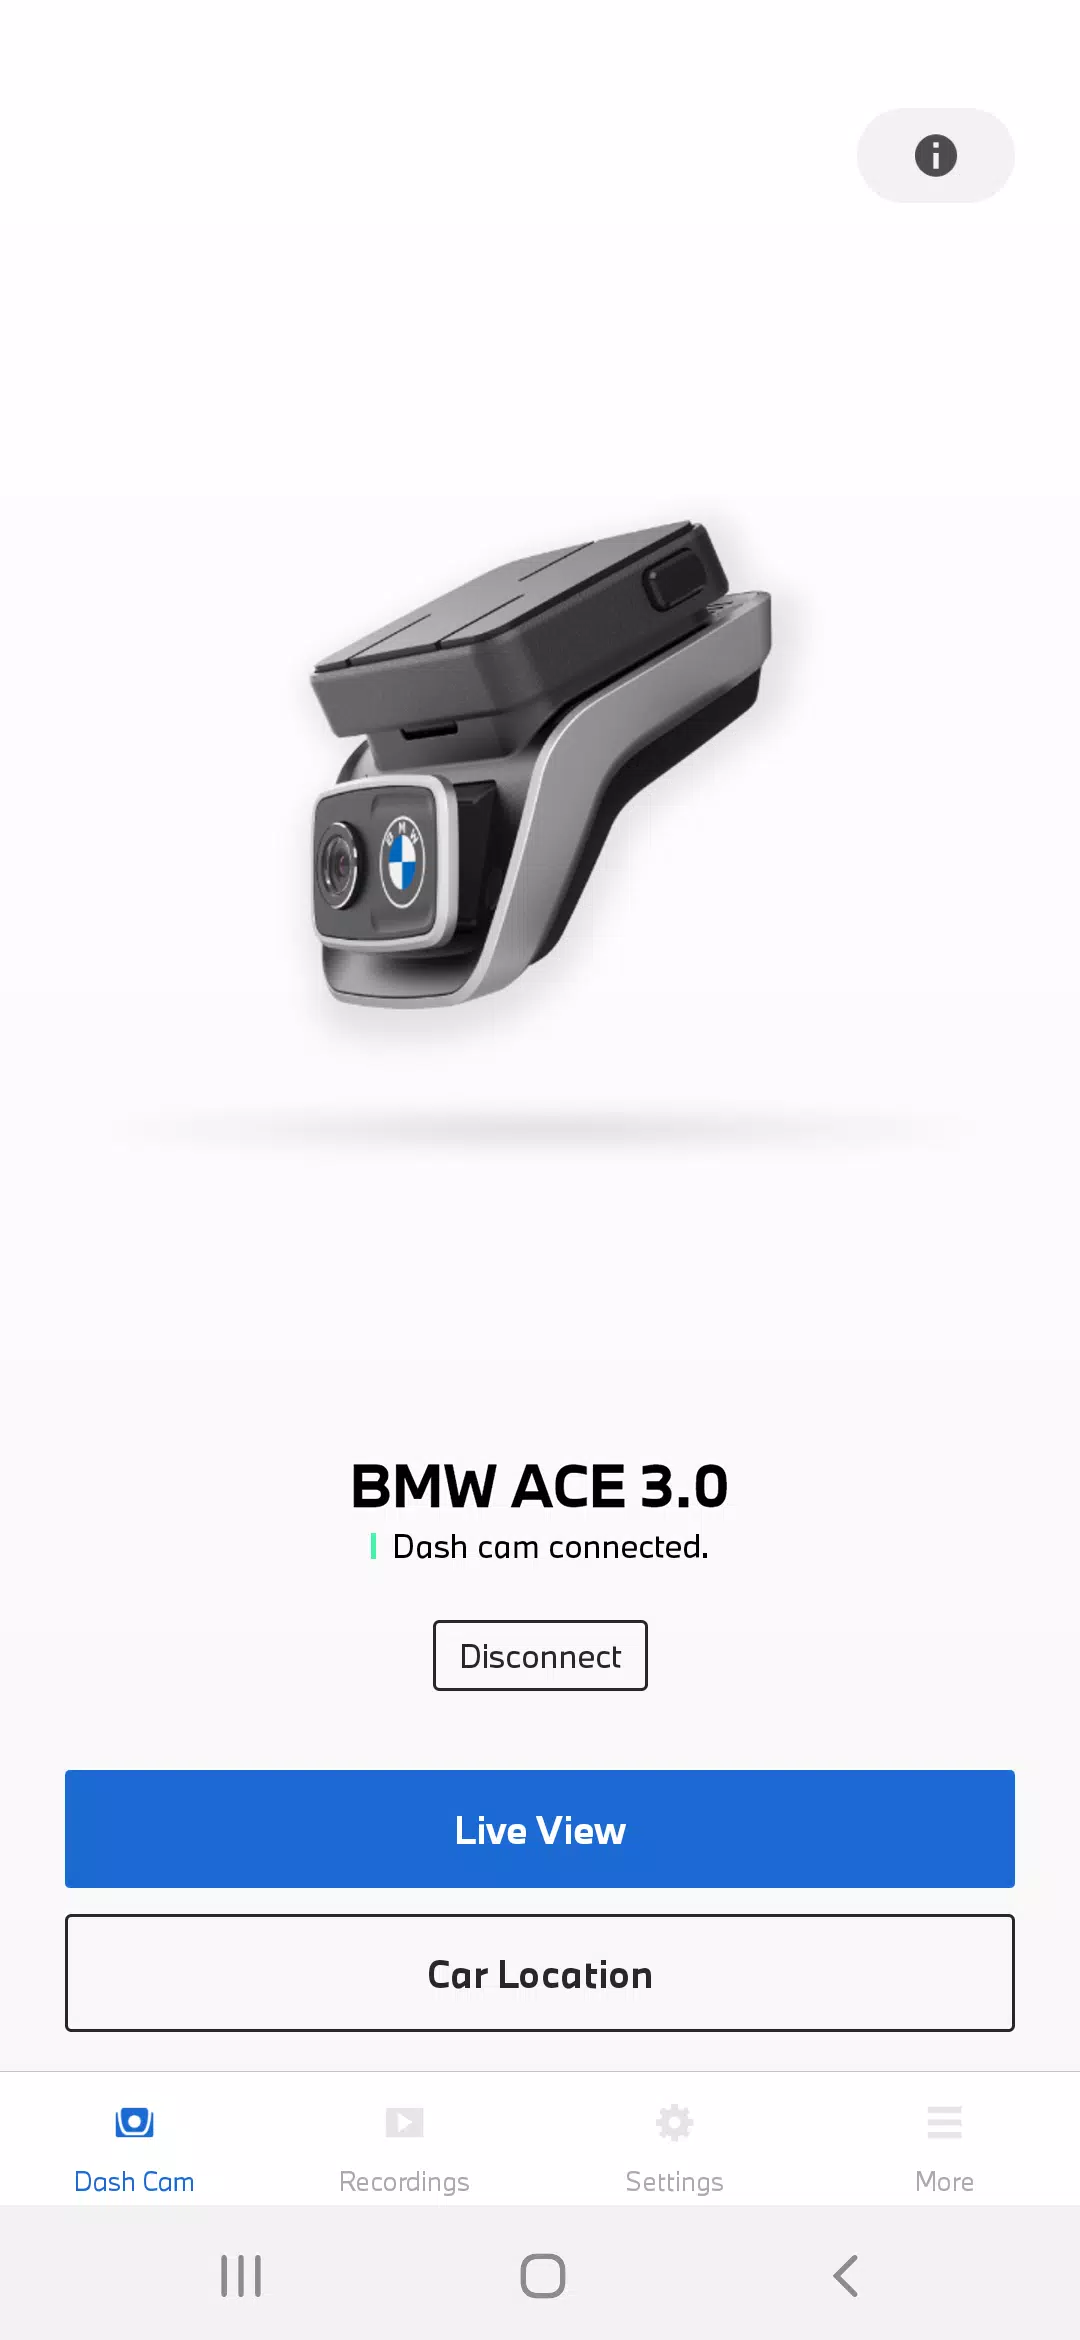 The BMW Advanced Car Eye 3.0